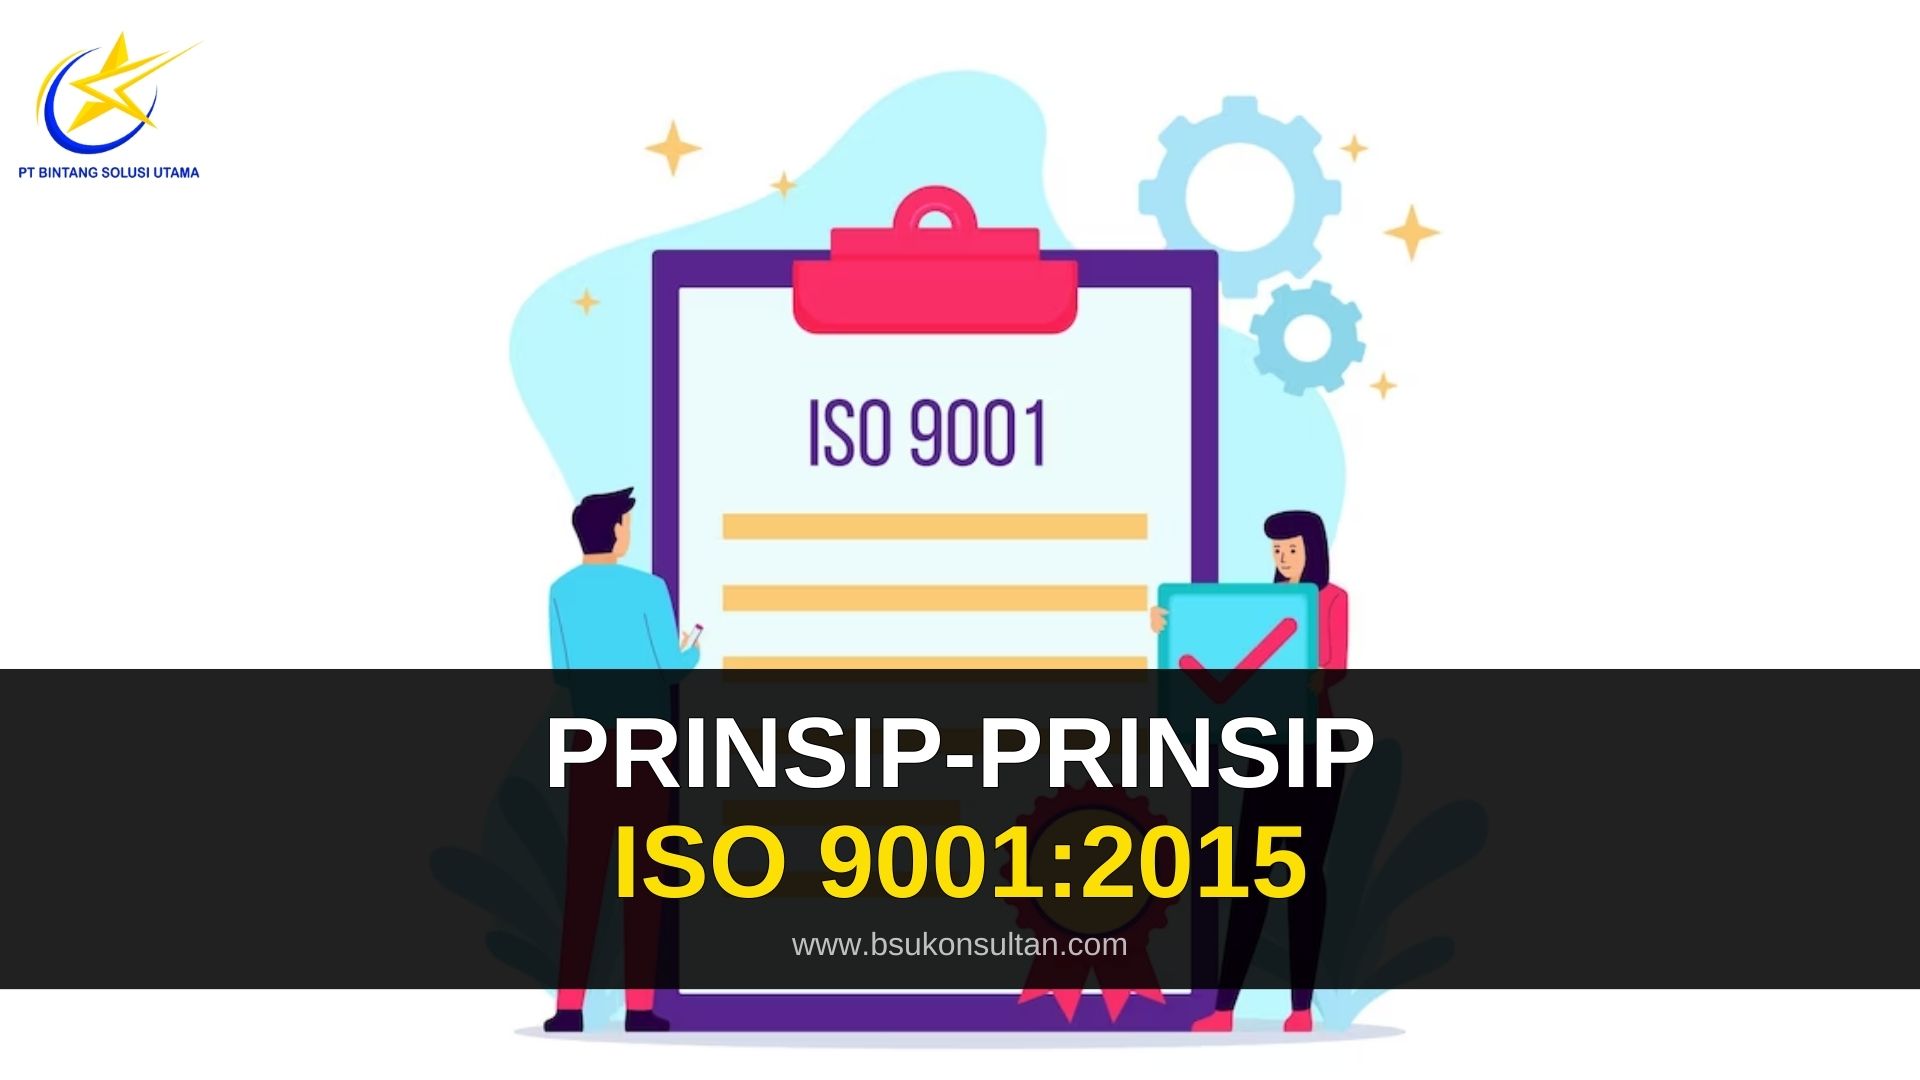 Prinsip-prinsip ISO 9001:2015